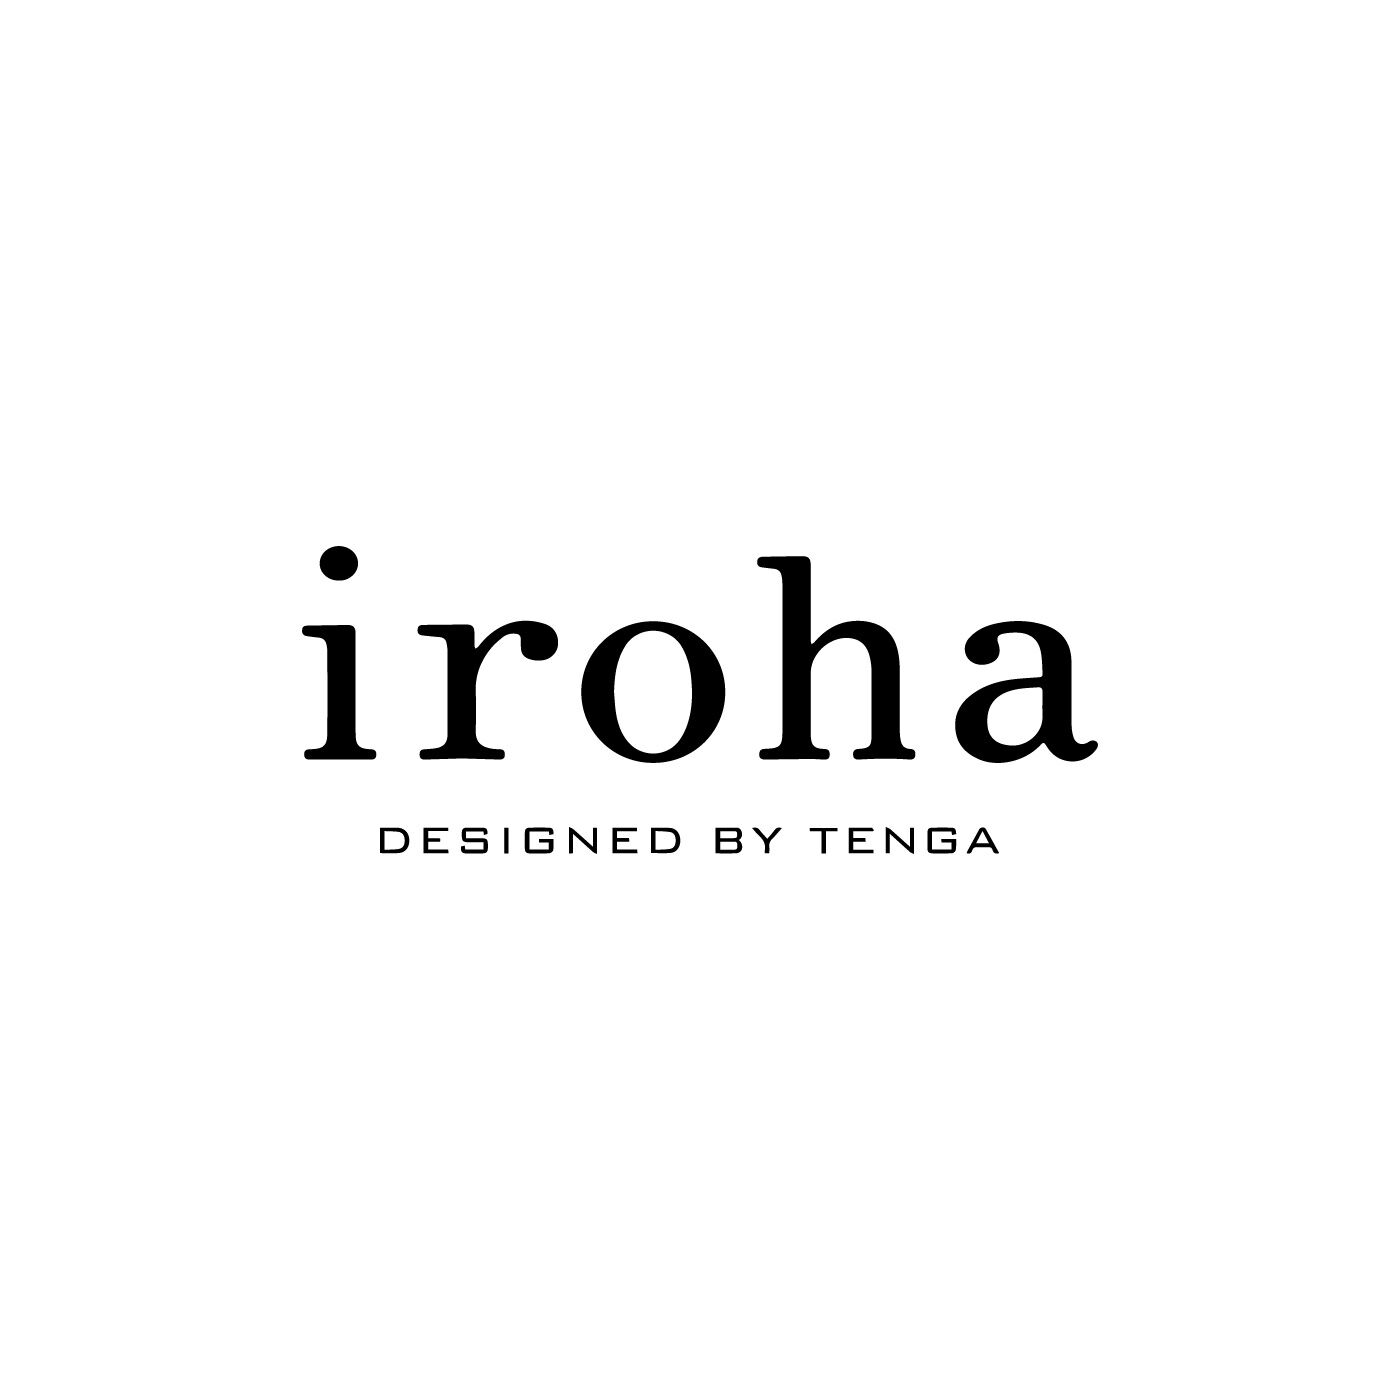 フェリシモコレクション|iroha　MOIST　GEL|寝る前にパックをするように、セルフケアのひとつとして、からだが求める「気持ちよさ」に応えることは、もっと大切にしてもいいこと。そんな思いで2013年3月から「iroha」はスタートしました。